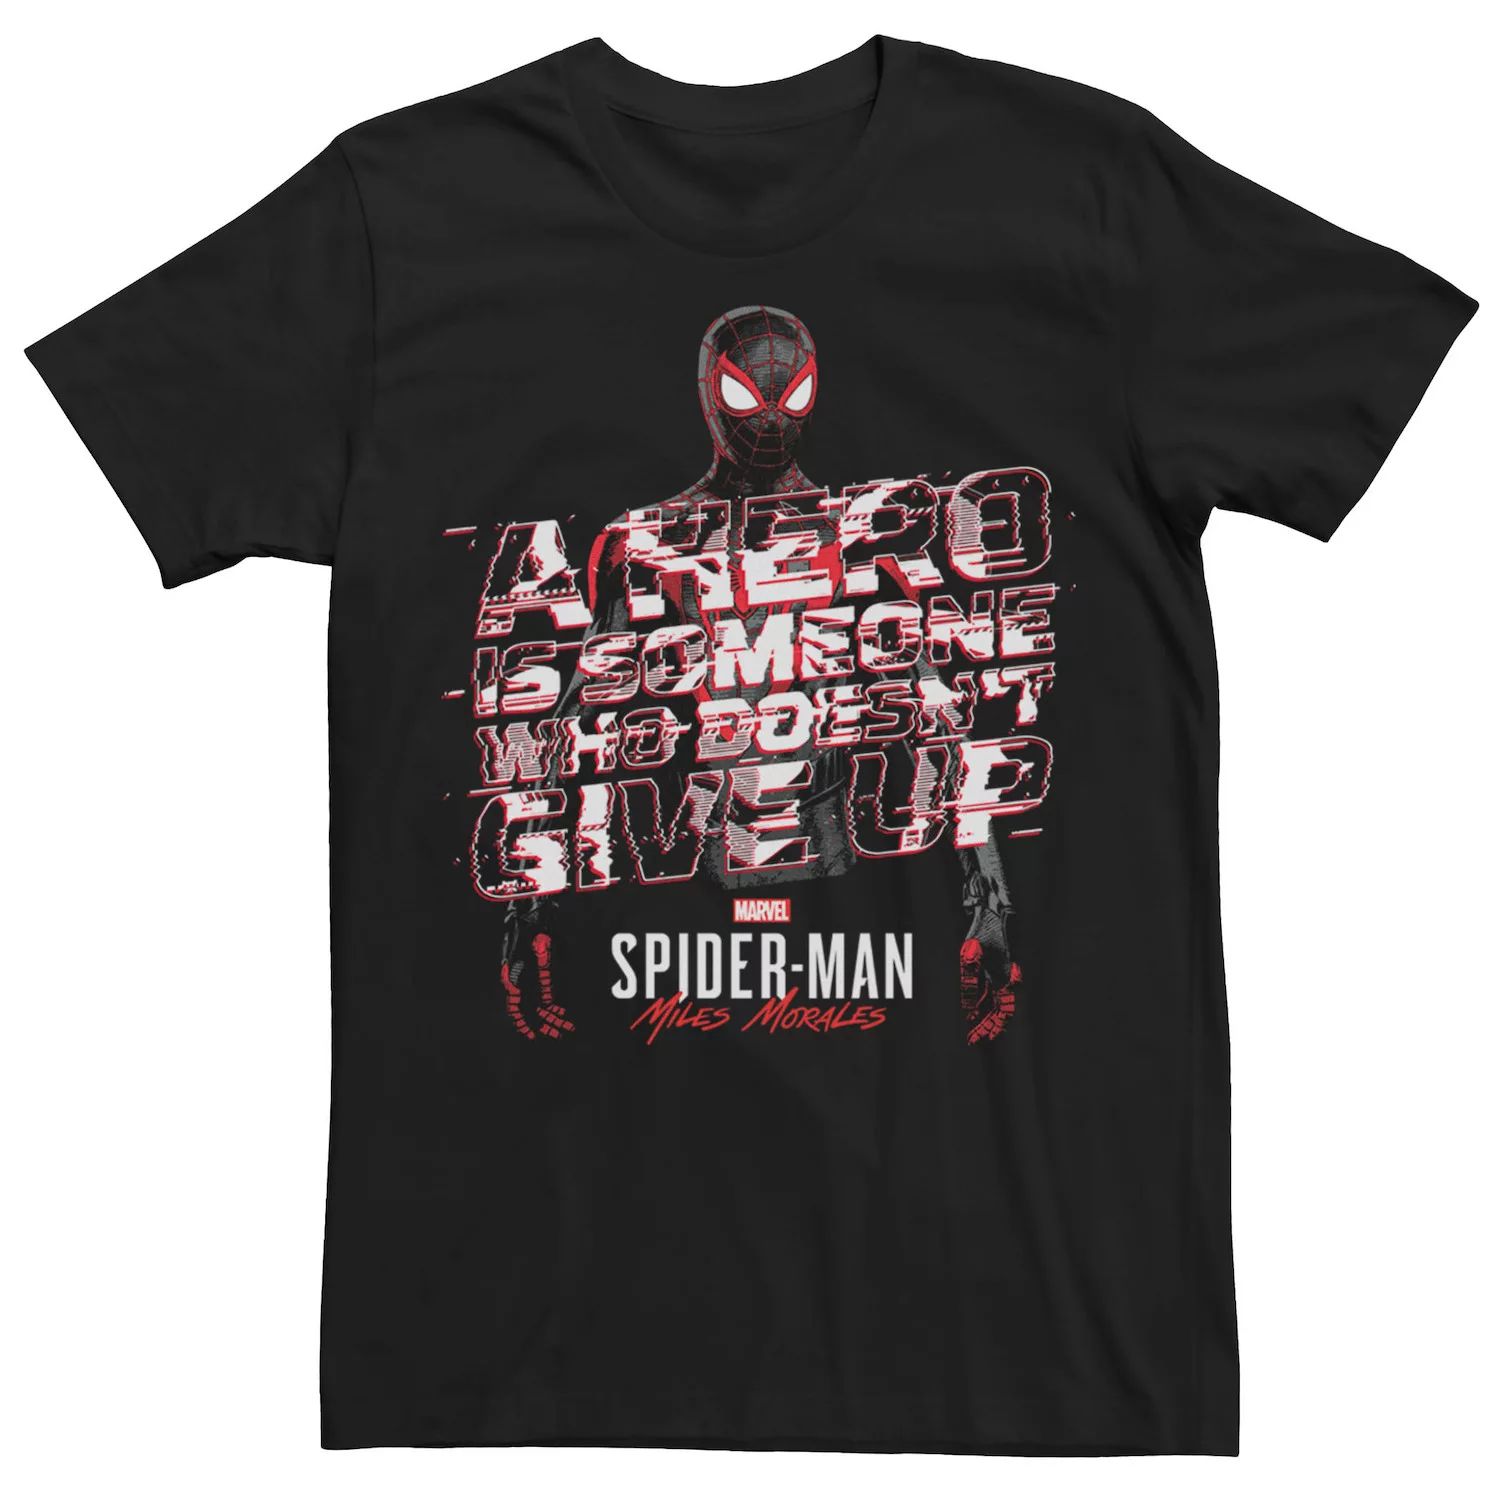 Мужская футболка с надписью «Человек-паук Майлз Моралес» Marvel набор marvel человек паук майлз моралес стражи галактики marvel для ps5